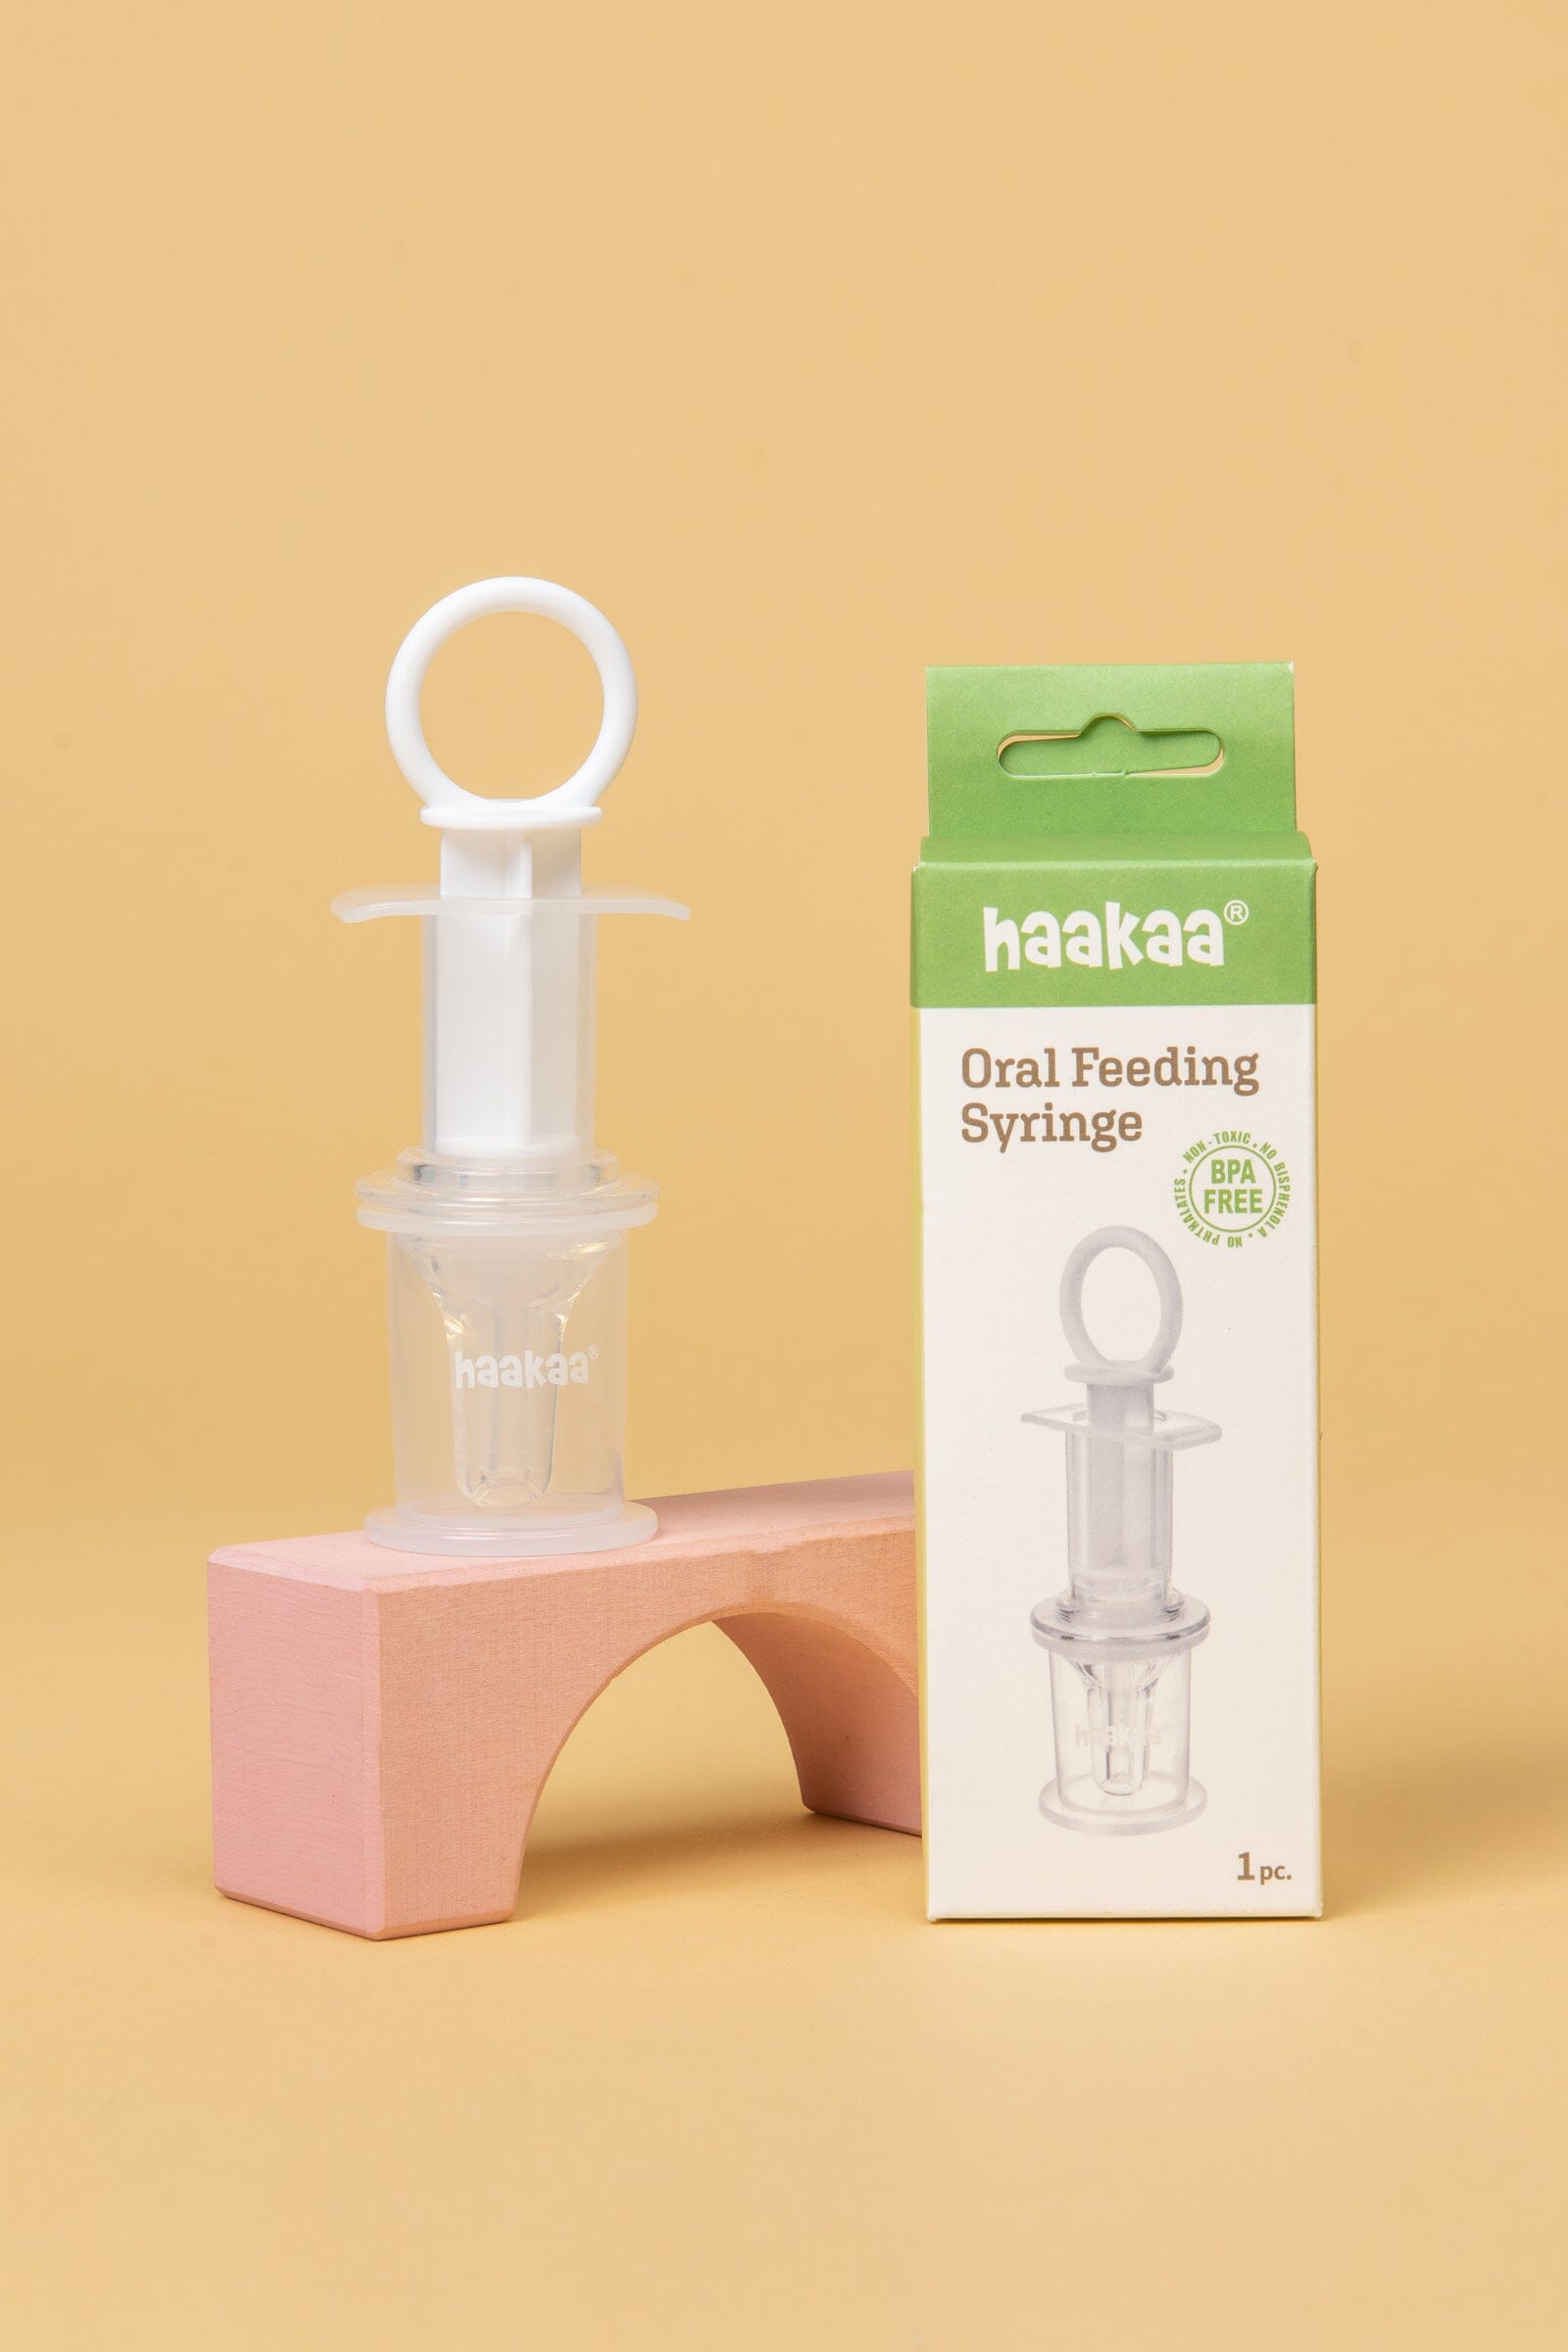 https://www.kiinbaby.com/cdn/shop/products/haakaa-oral-feeding-syringe-feeding-haakaa-264502.jpg?v=1675325206&width=1946